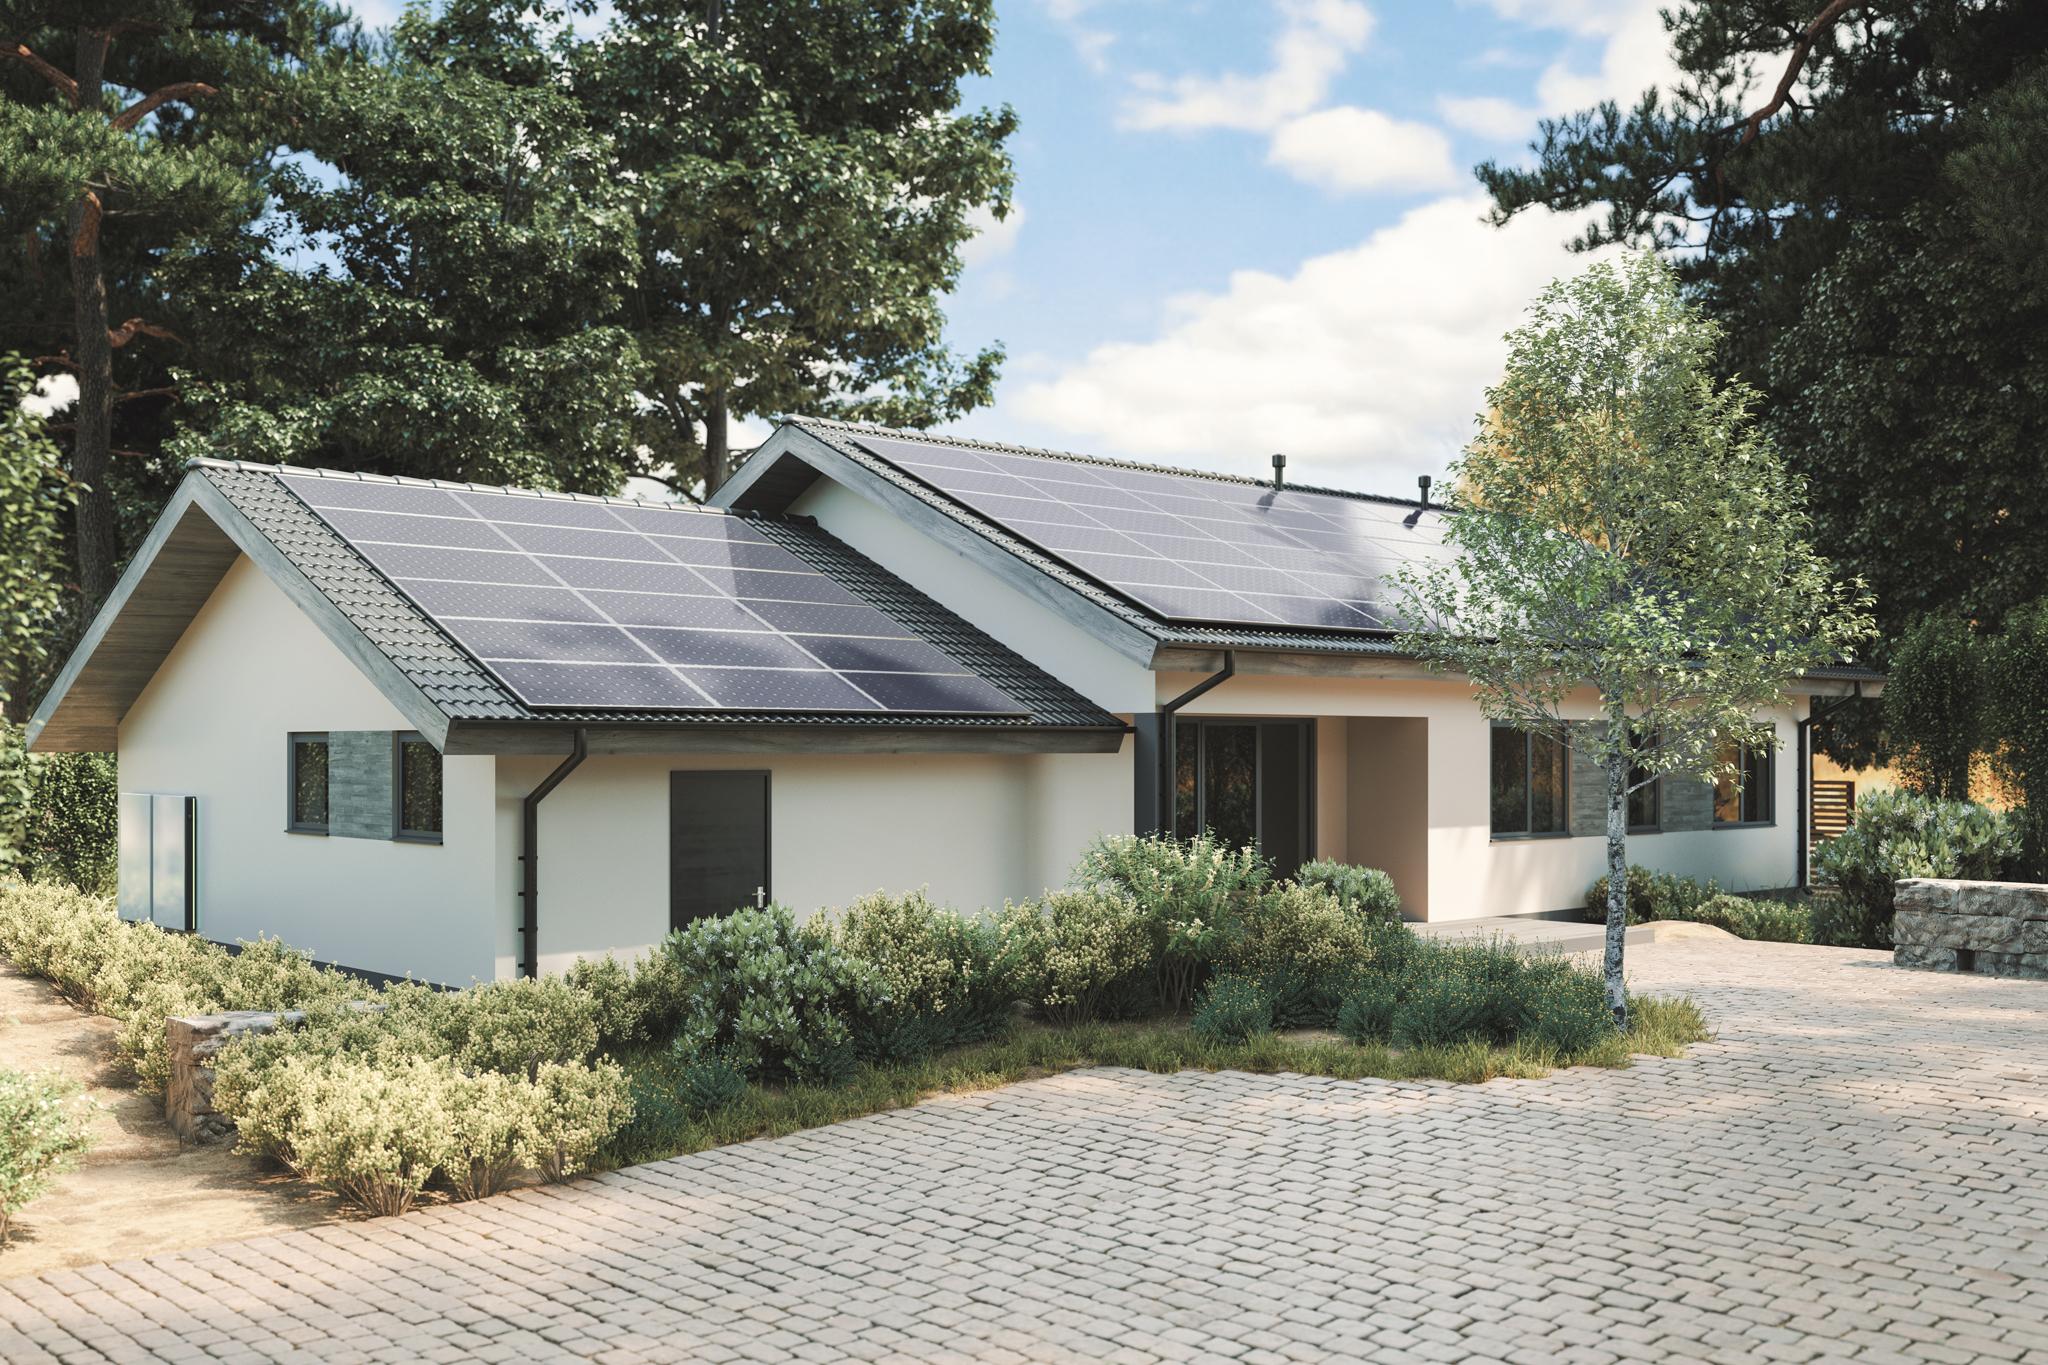 PV-Anlage auf dem Dach - wann lohnt sich Photovoltaik nicht? zolar erklärt.